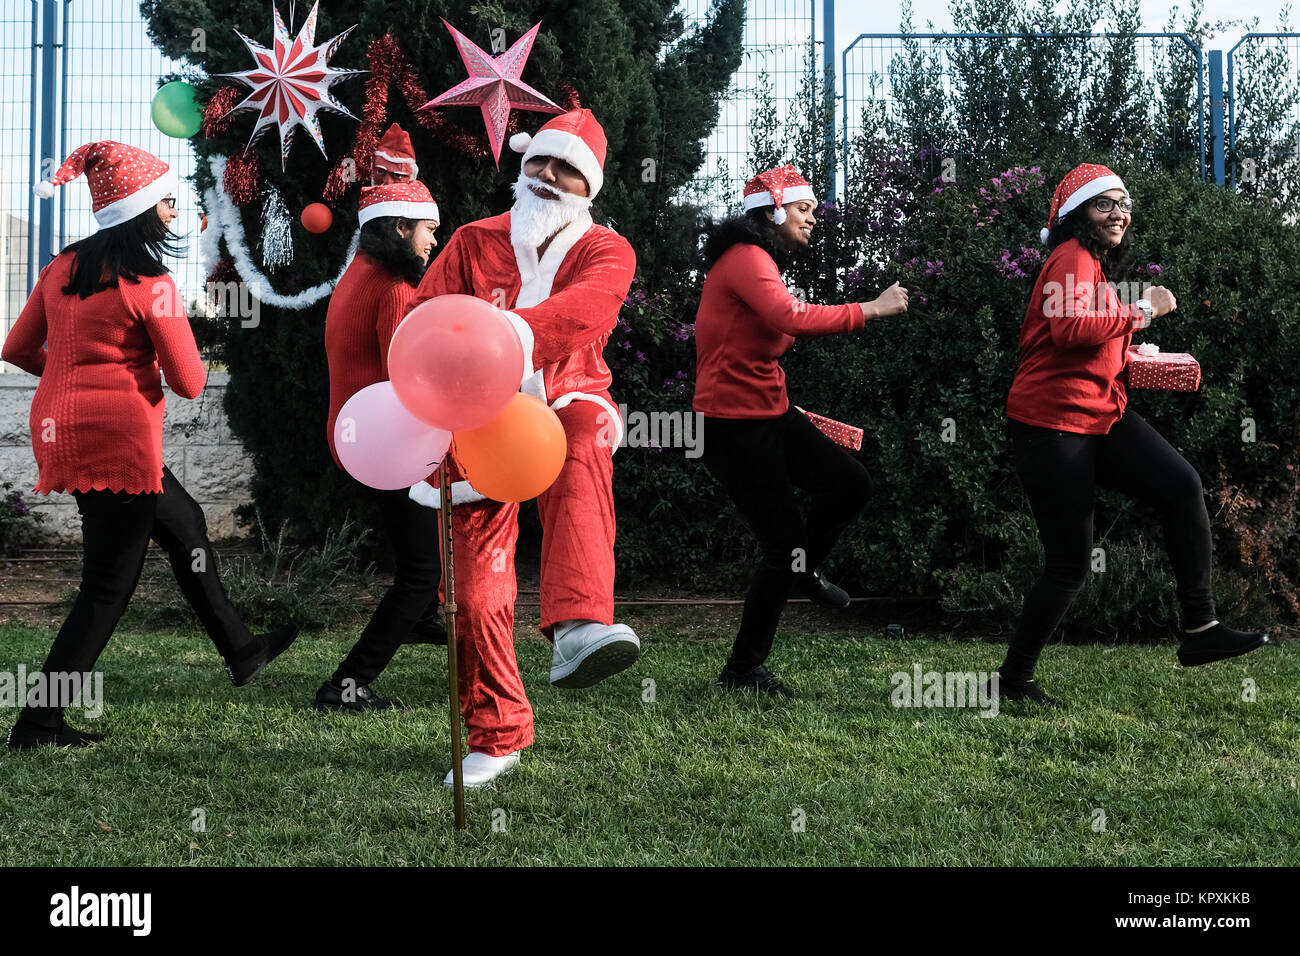 Jerusalén, Israel. 17 de diciembre de 2017. Los trabajadores extranjeros  procedentes de la India, vestidos con trajes de Santa Claus, preparar un  clip de vídeo para enviar a sus familiares en Navidad.